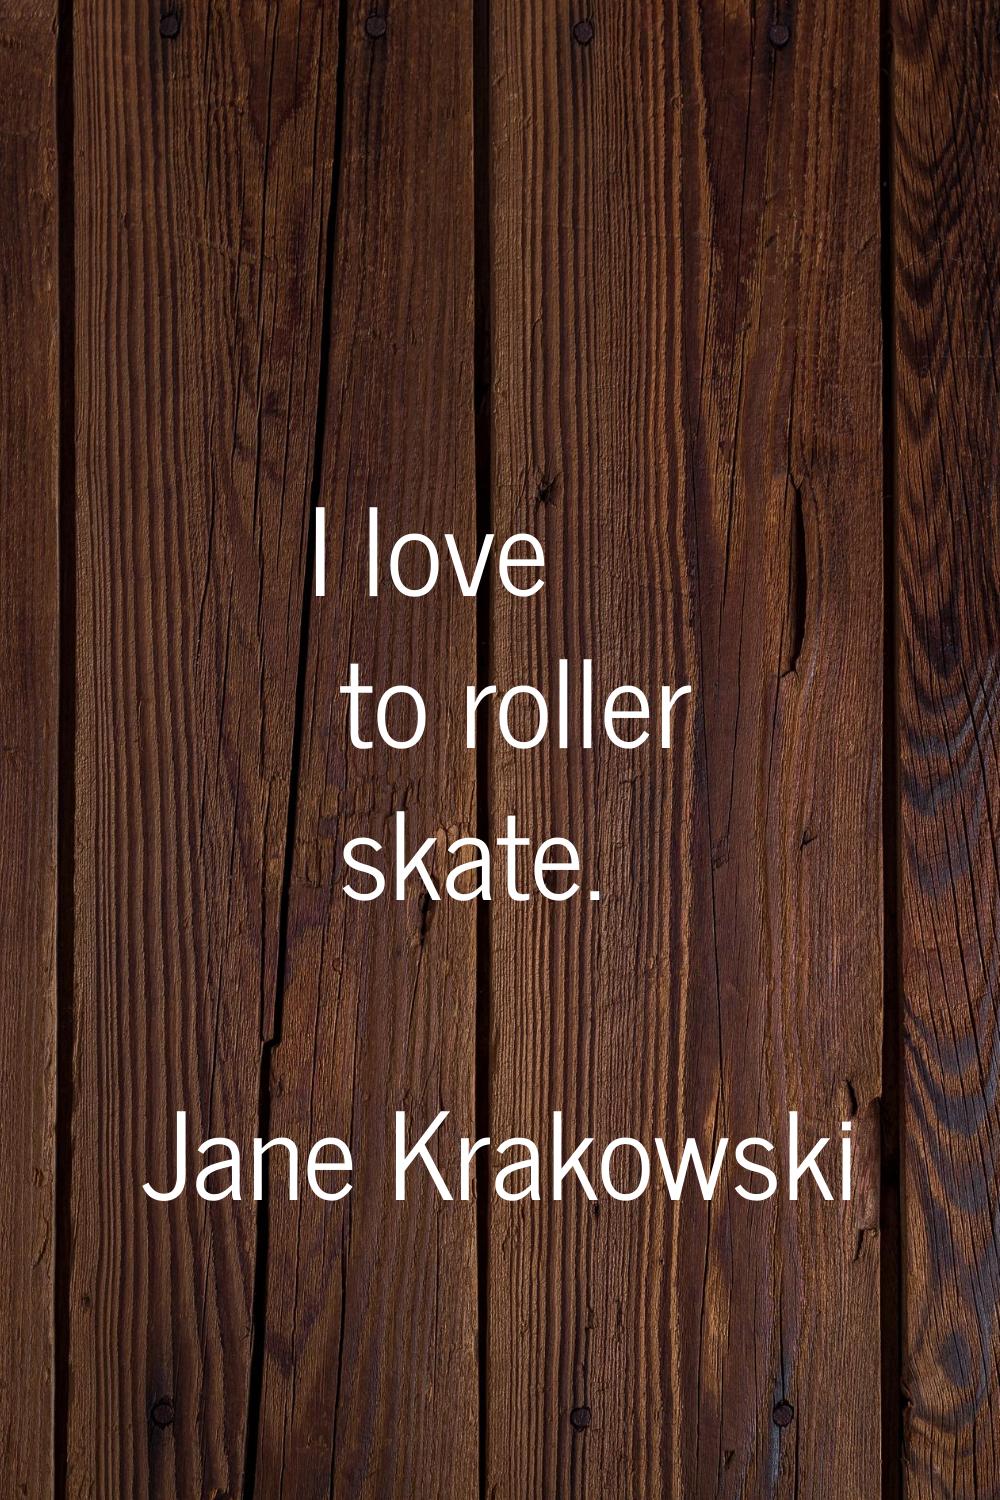 I love to roller skate.